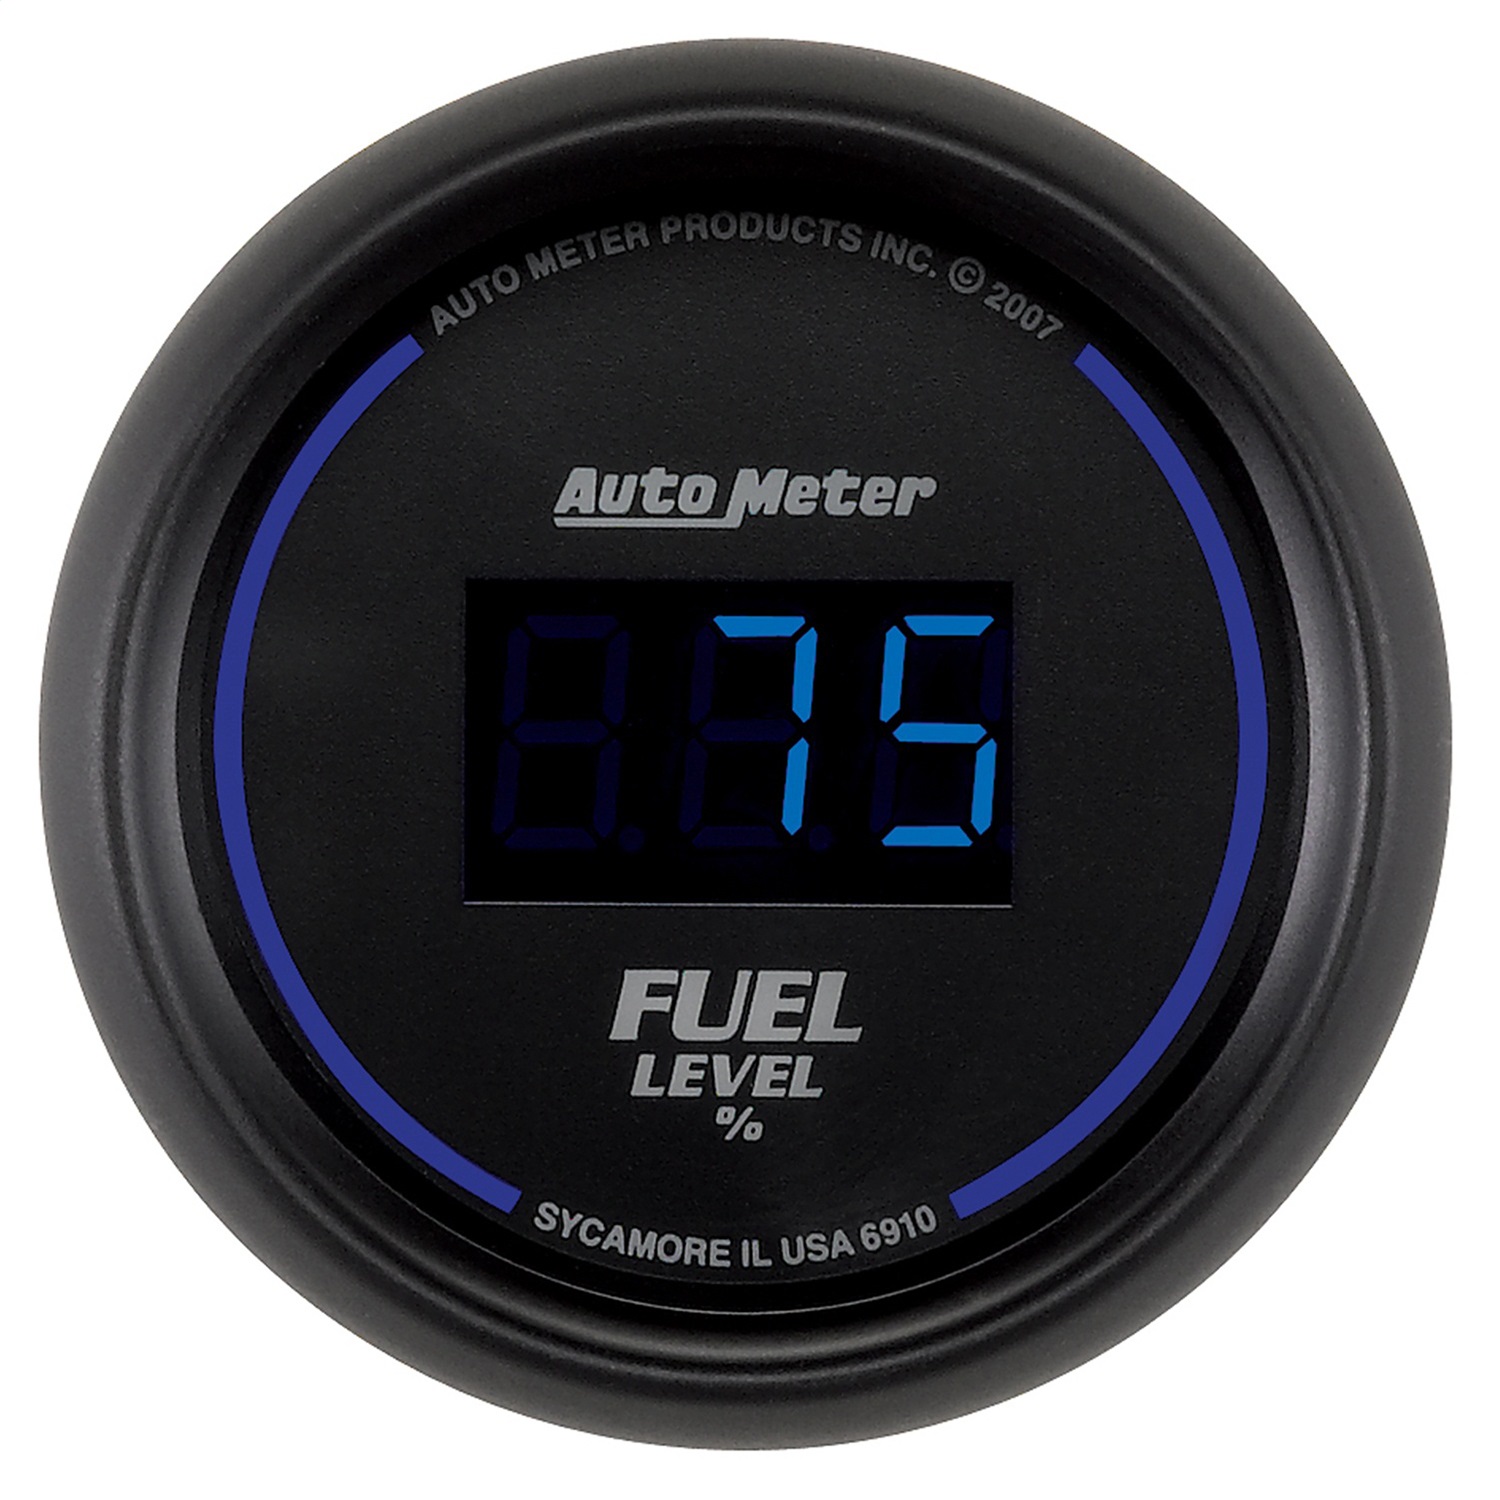 Auto Meter Auto Meter 6910 Cobalt; Digital Programmable Fuel Level Gauge